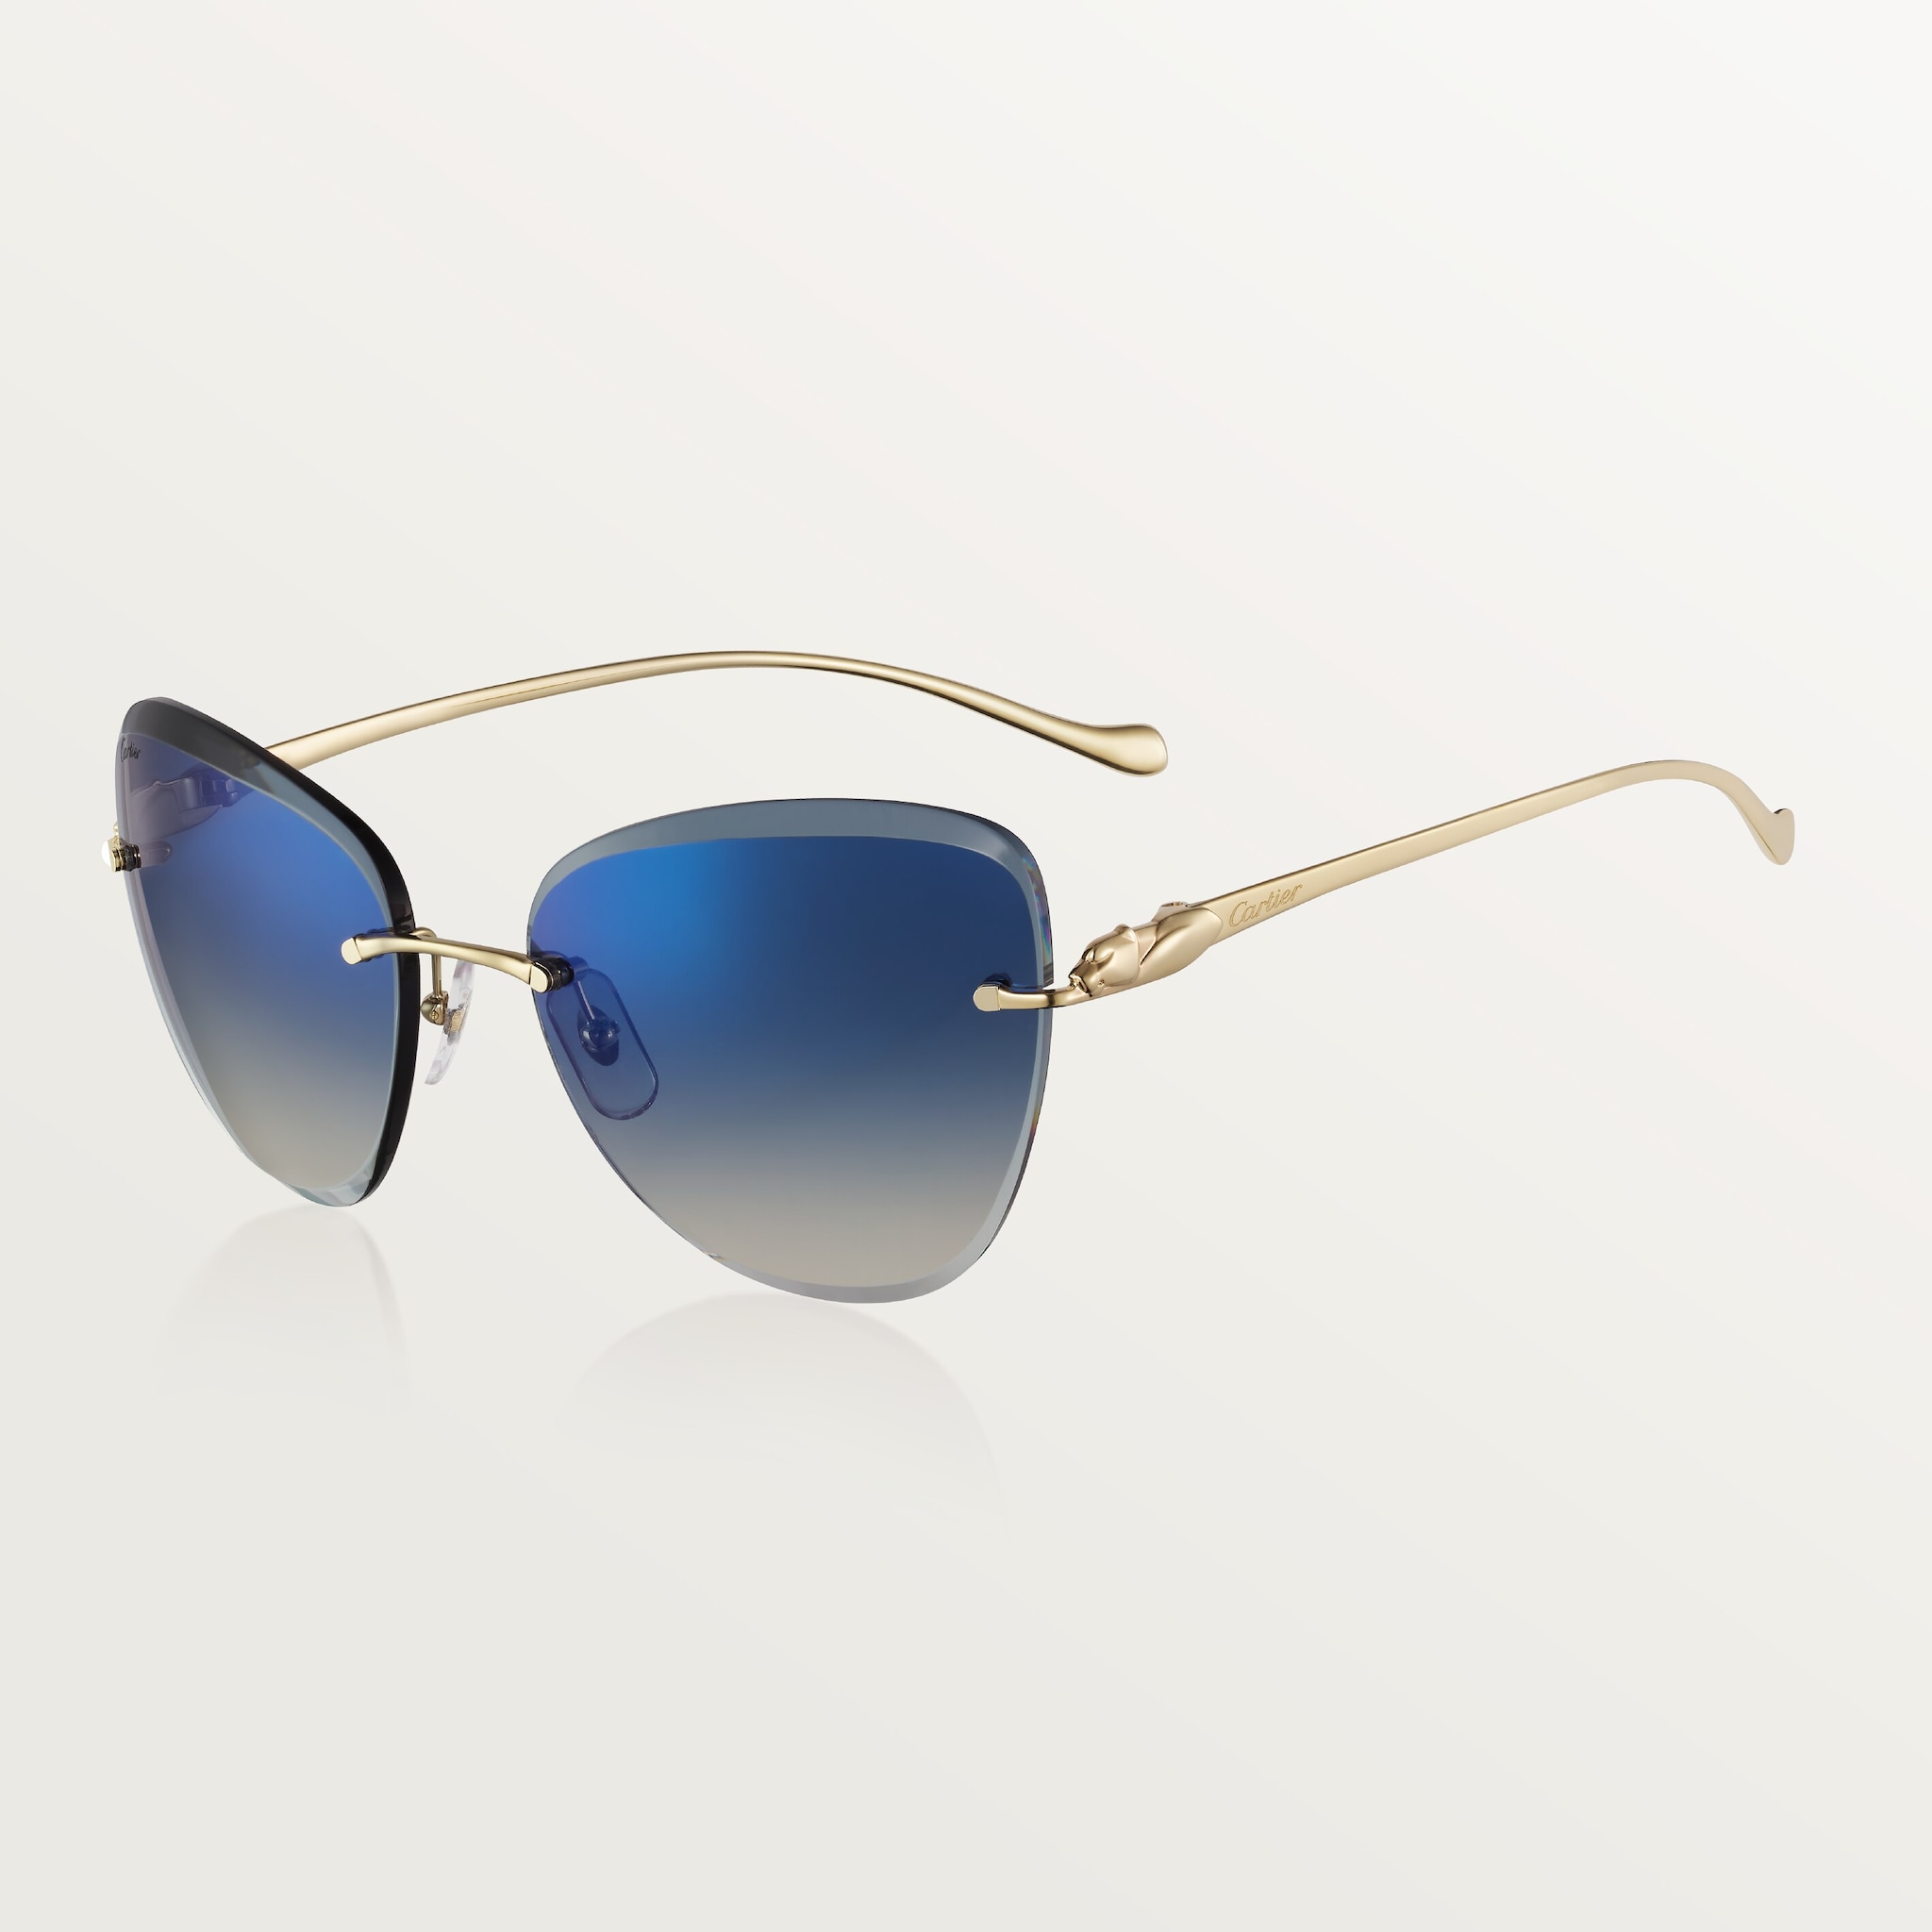 Gafas de sol Panthère de CartierMetal acabado dorado liso, lentes degradadas azules